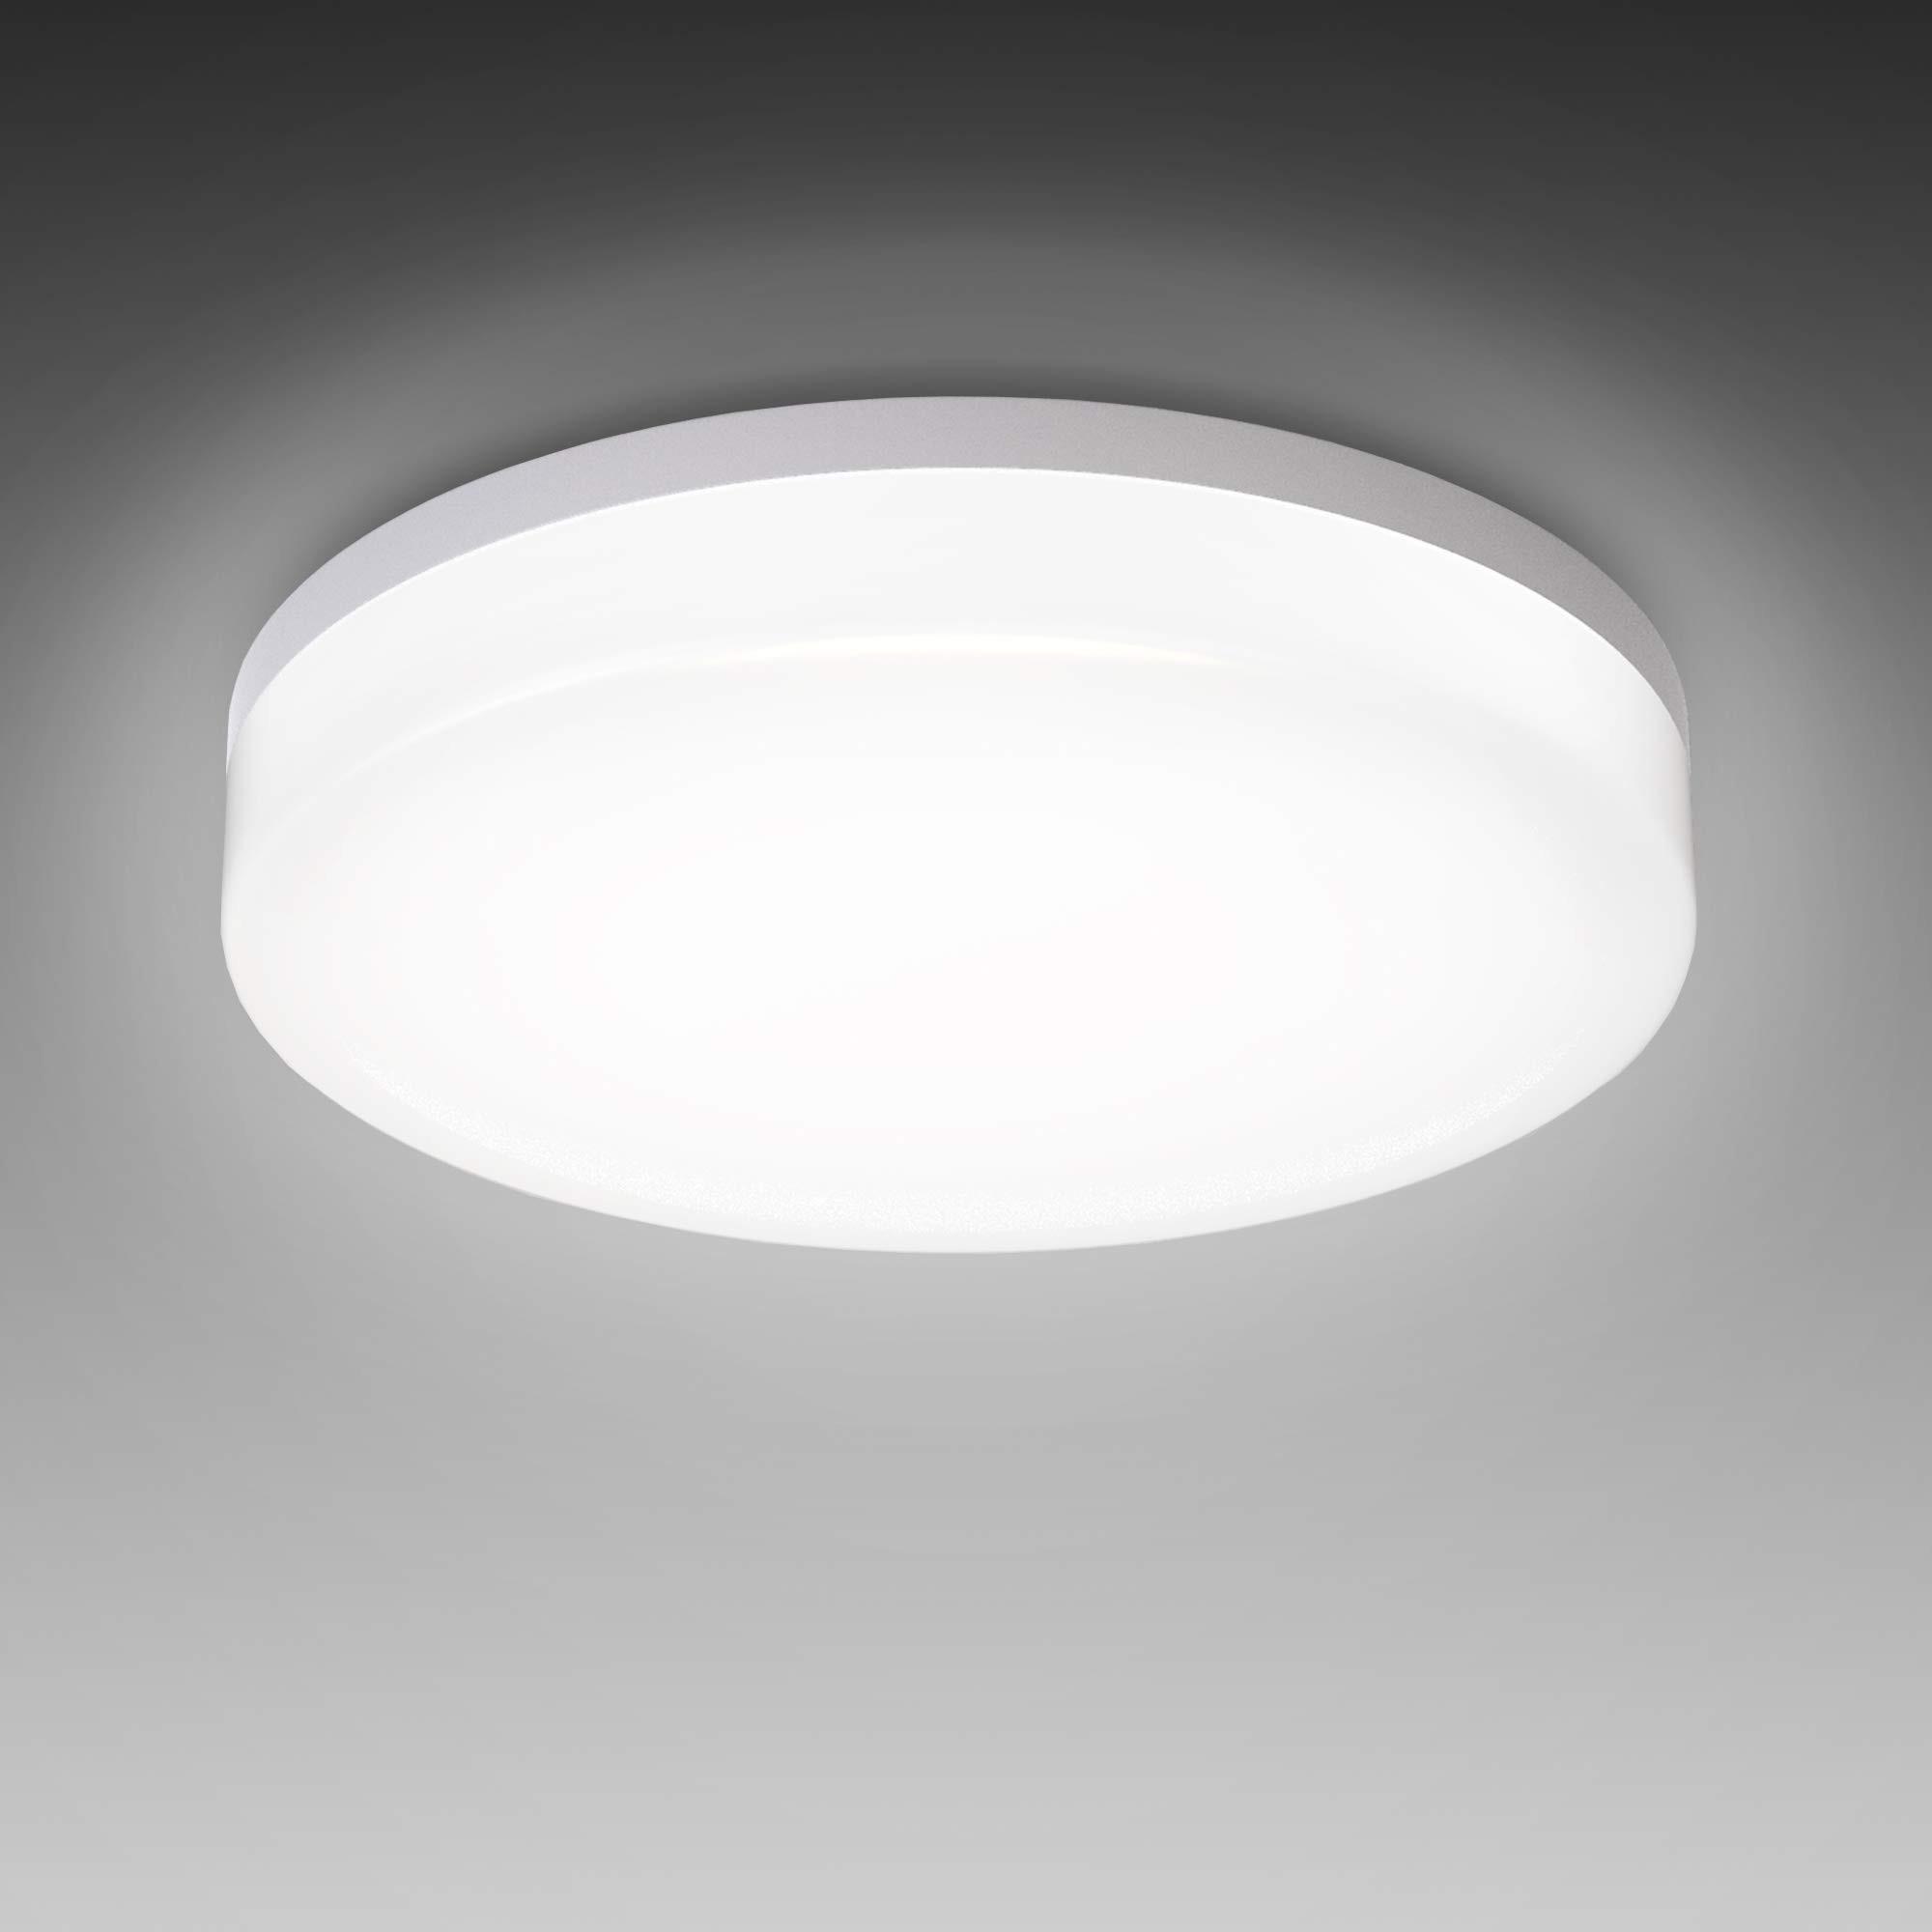 B.K.Licht - Deckenlampe für das Bad mit neutralweißer Lichtfarbe, IP54, 13 Watt, 1600 Lumen, LED Deckenleuchte, LED Lampe, Badlampe, Badezimmerlampe, Küchenlampe, Feuchtraumleuchte, 22x5,4 cm, Weiß